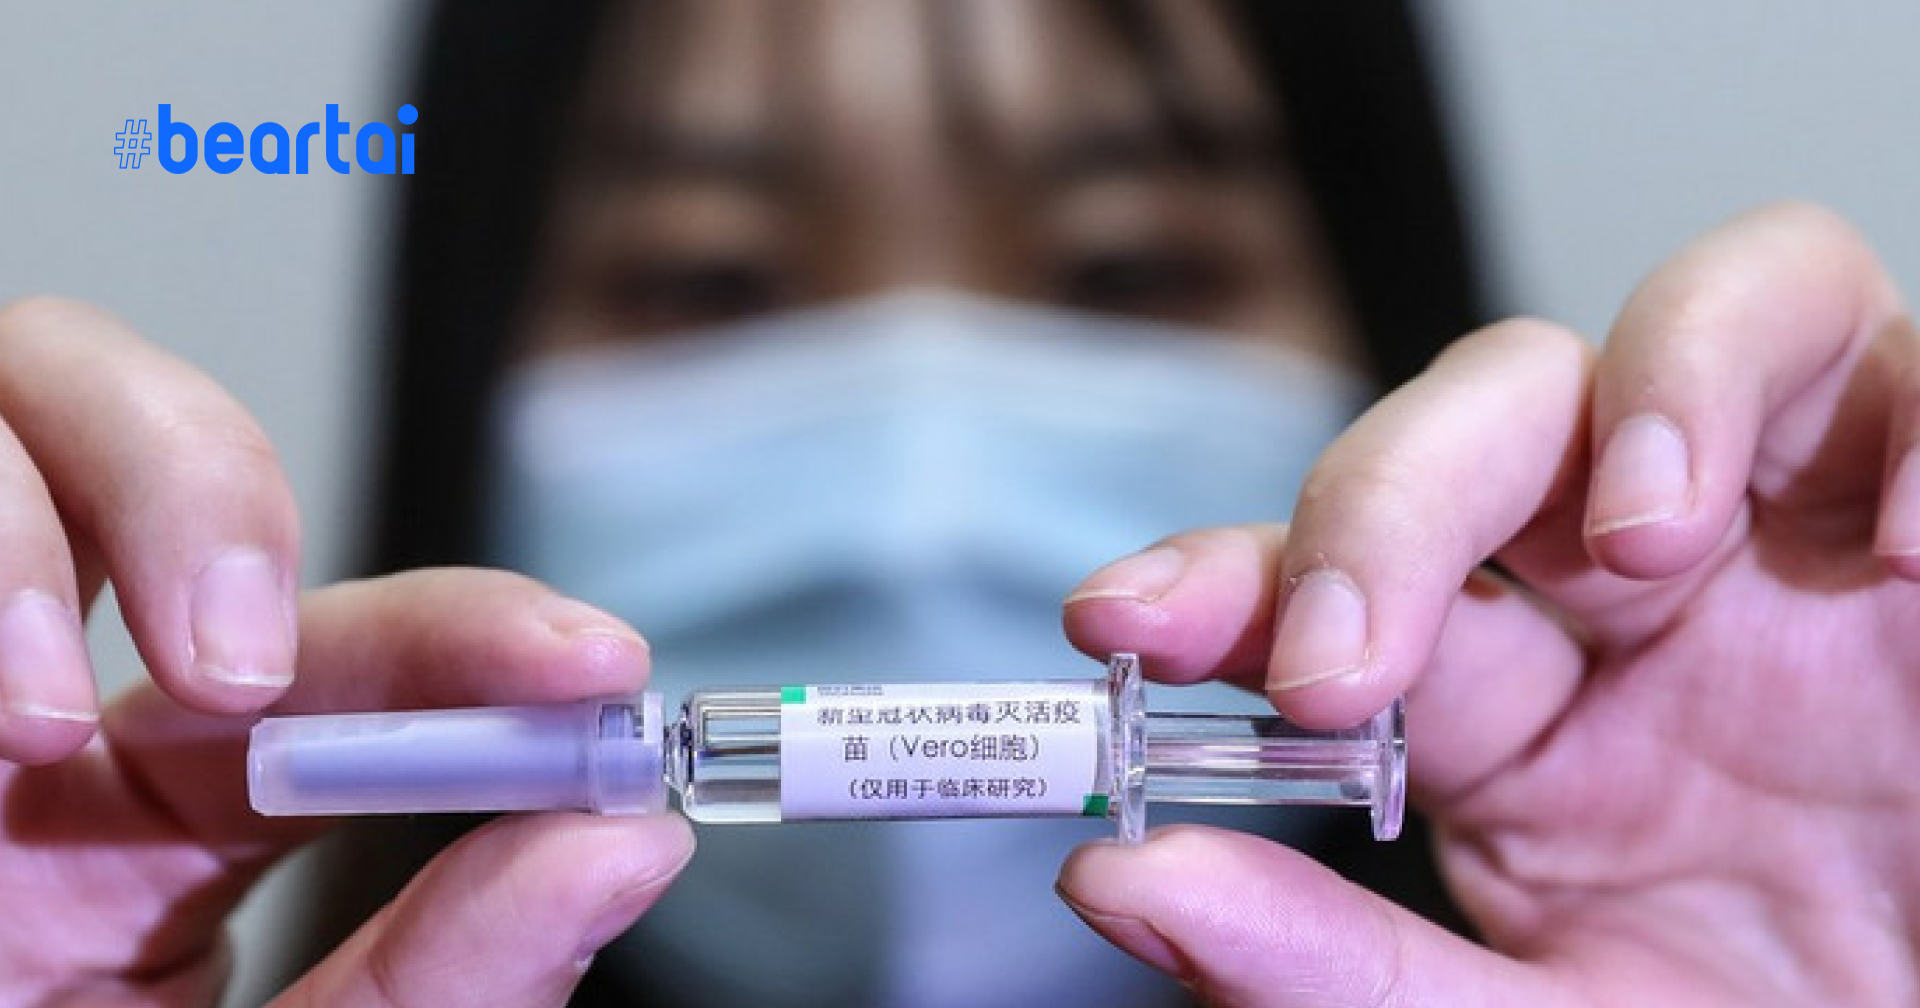 ข่าวดี!! วัคซีน COVID-19 ของจีนใกล้สำเร็จแล้ว 2 ตัว ได้รับสิทธิบัตรแล้วตัวนึง